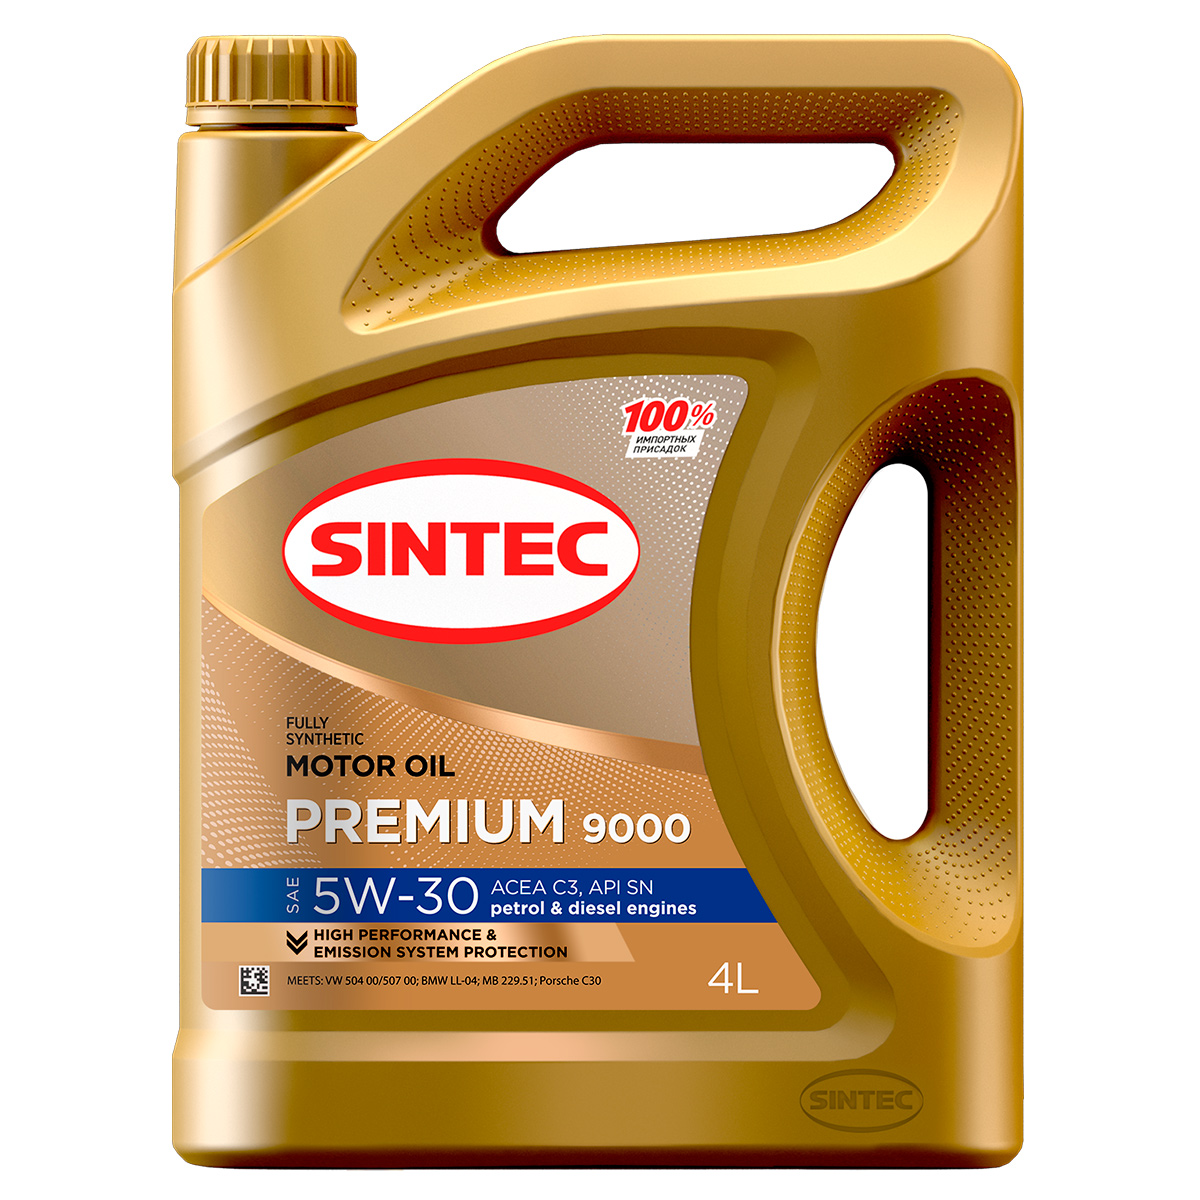 SINTEC 600131 Sintec Premium 9000 5W-30 C3 4л